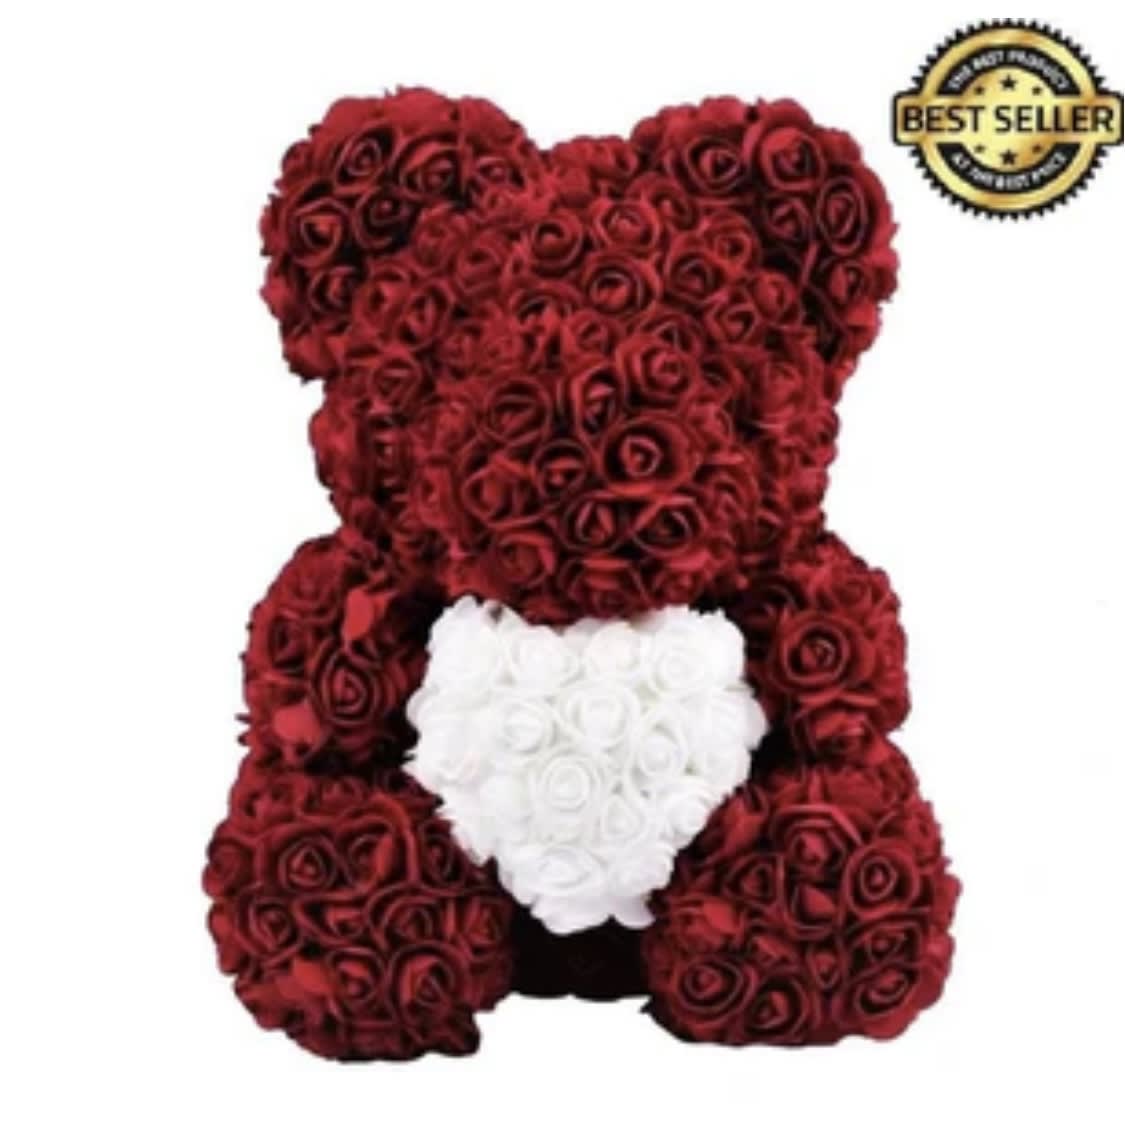 Rose Bears - Gorgeous teddy bear handmade of roses that last forever. 15x12